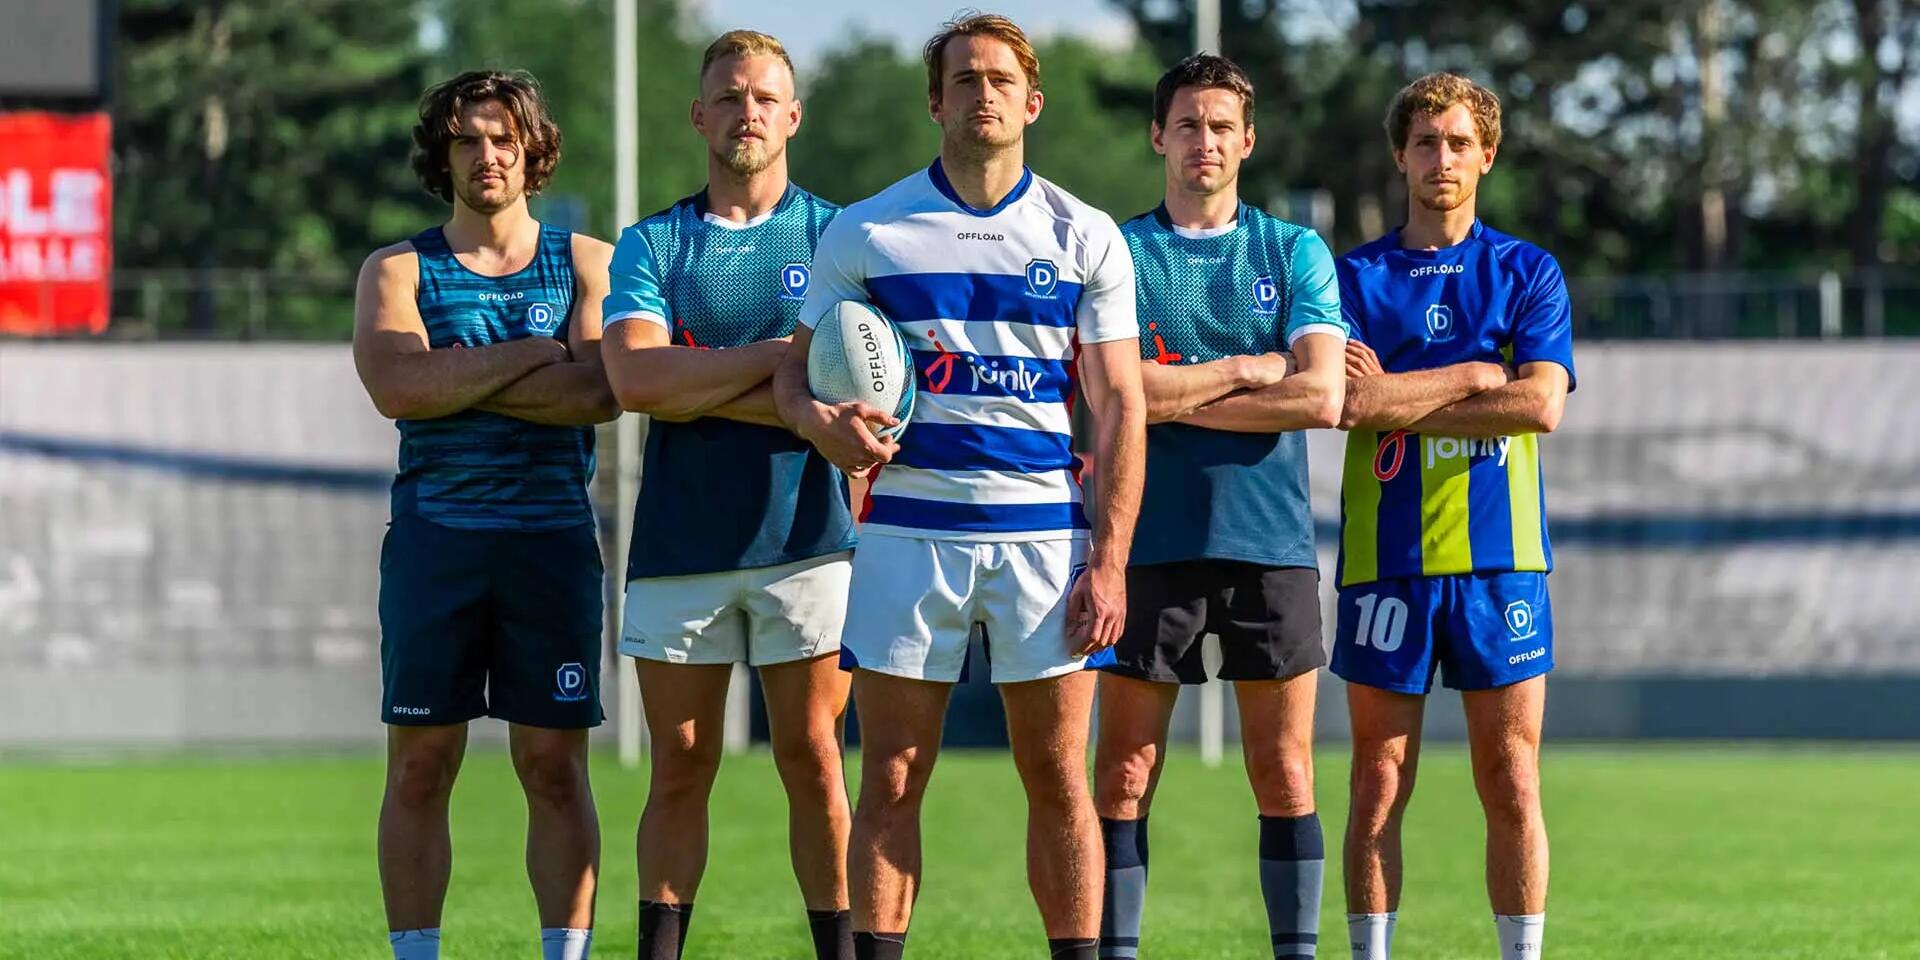 zawodnicy stojący na boisku ubrani w stroje do gry w rugby 